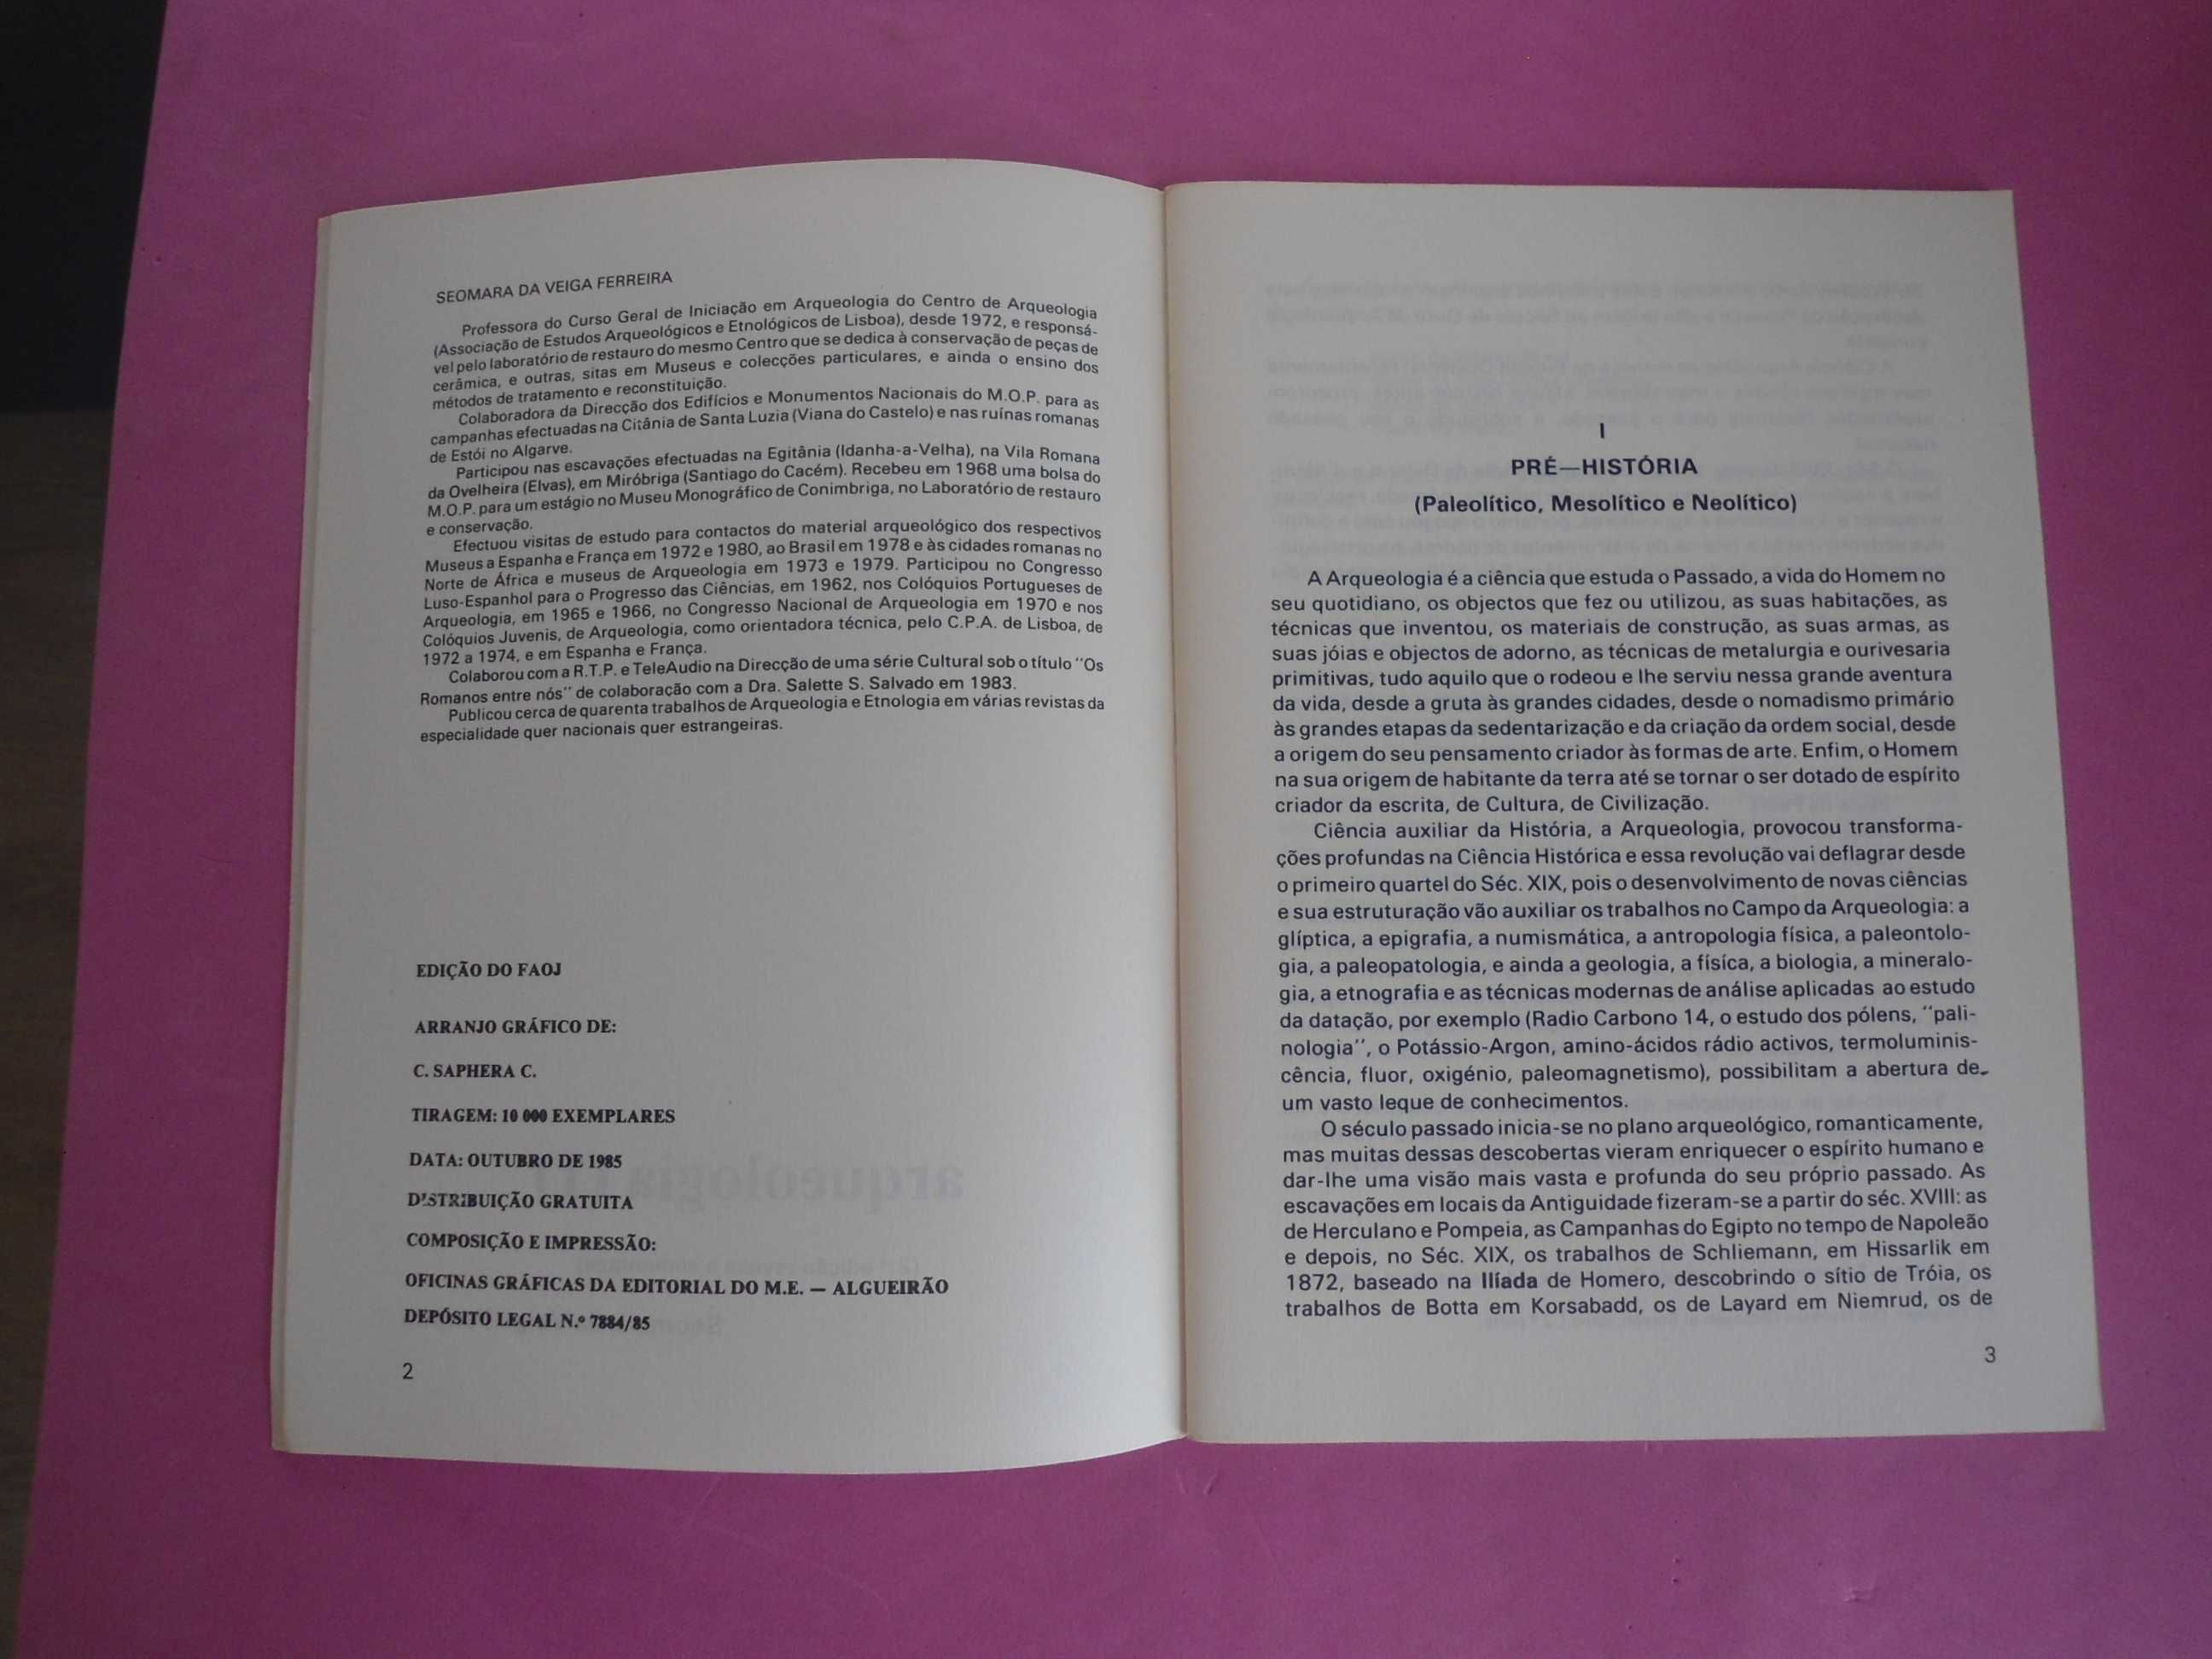 Cadernos FAOJ - Arqueologia (1) de Seomara da Veiga Ferreira